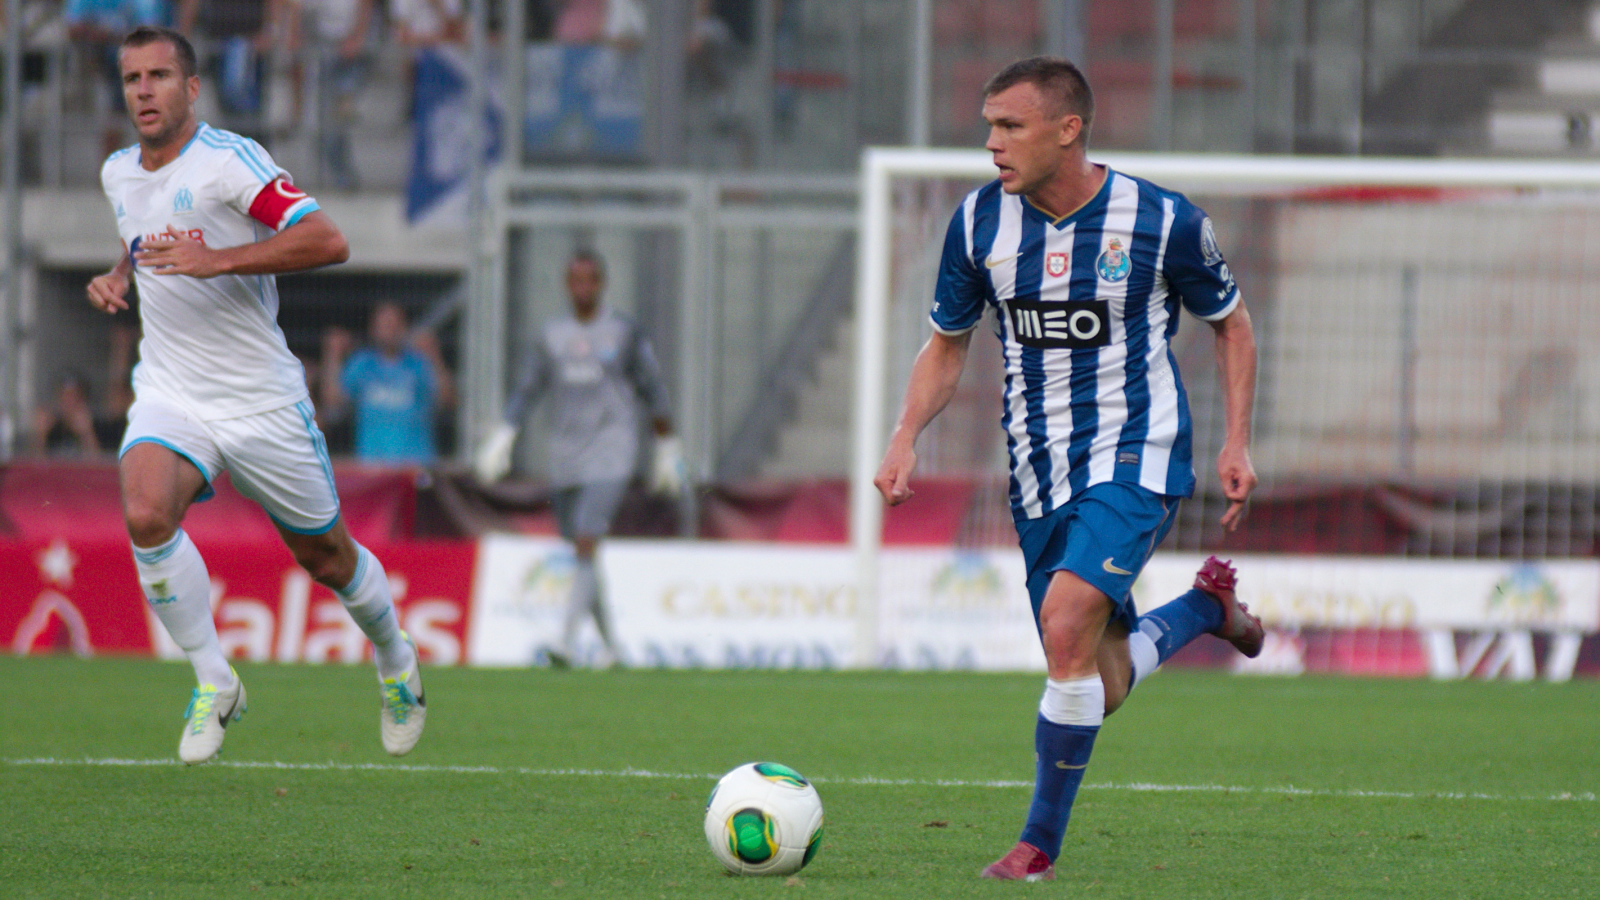 Porto midfielder Marat Izmailov